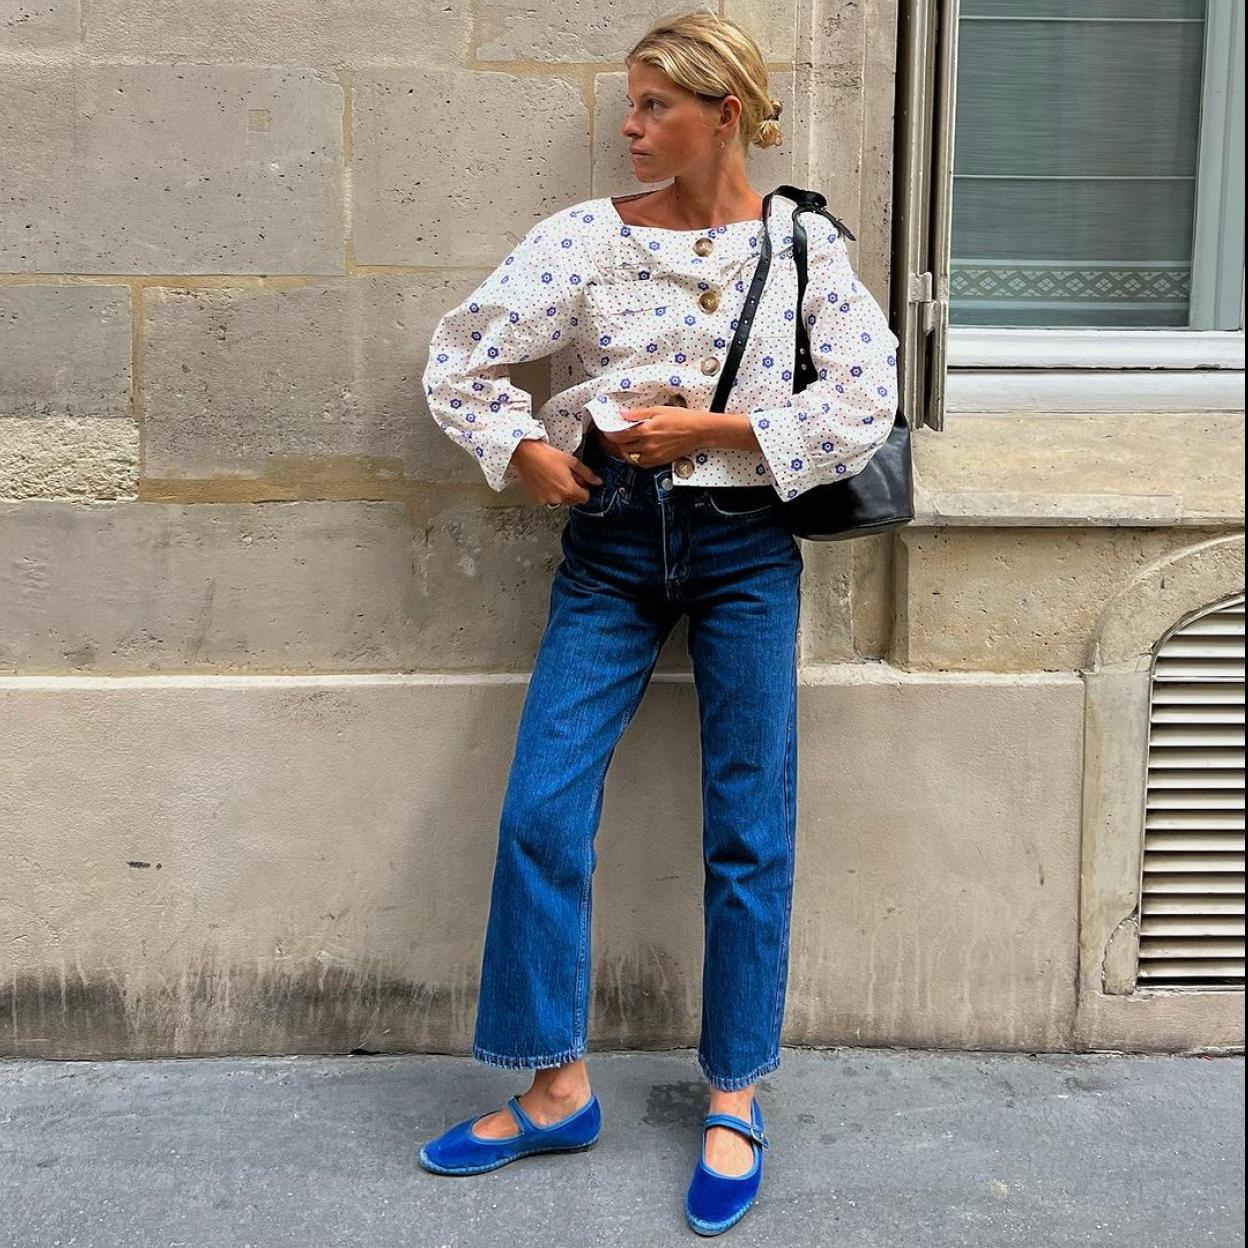 Mulher loira usando um look com sapato boneca de cor azul, blusa com pequenas estampas e jeans reta